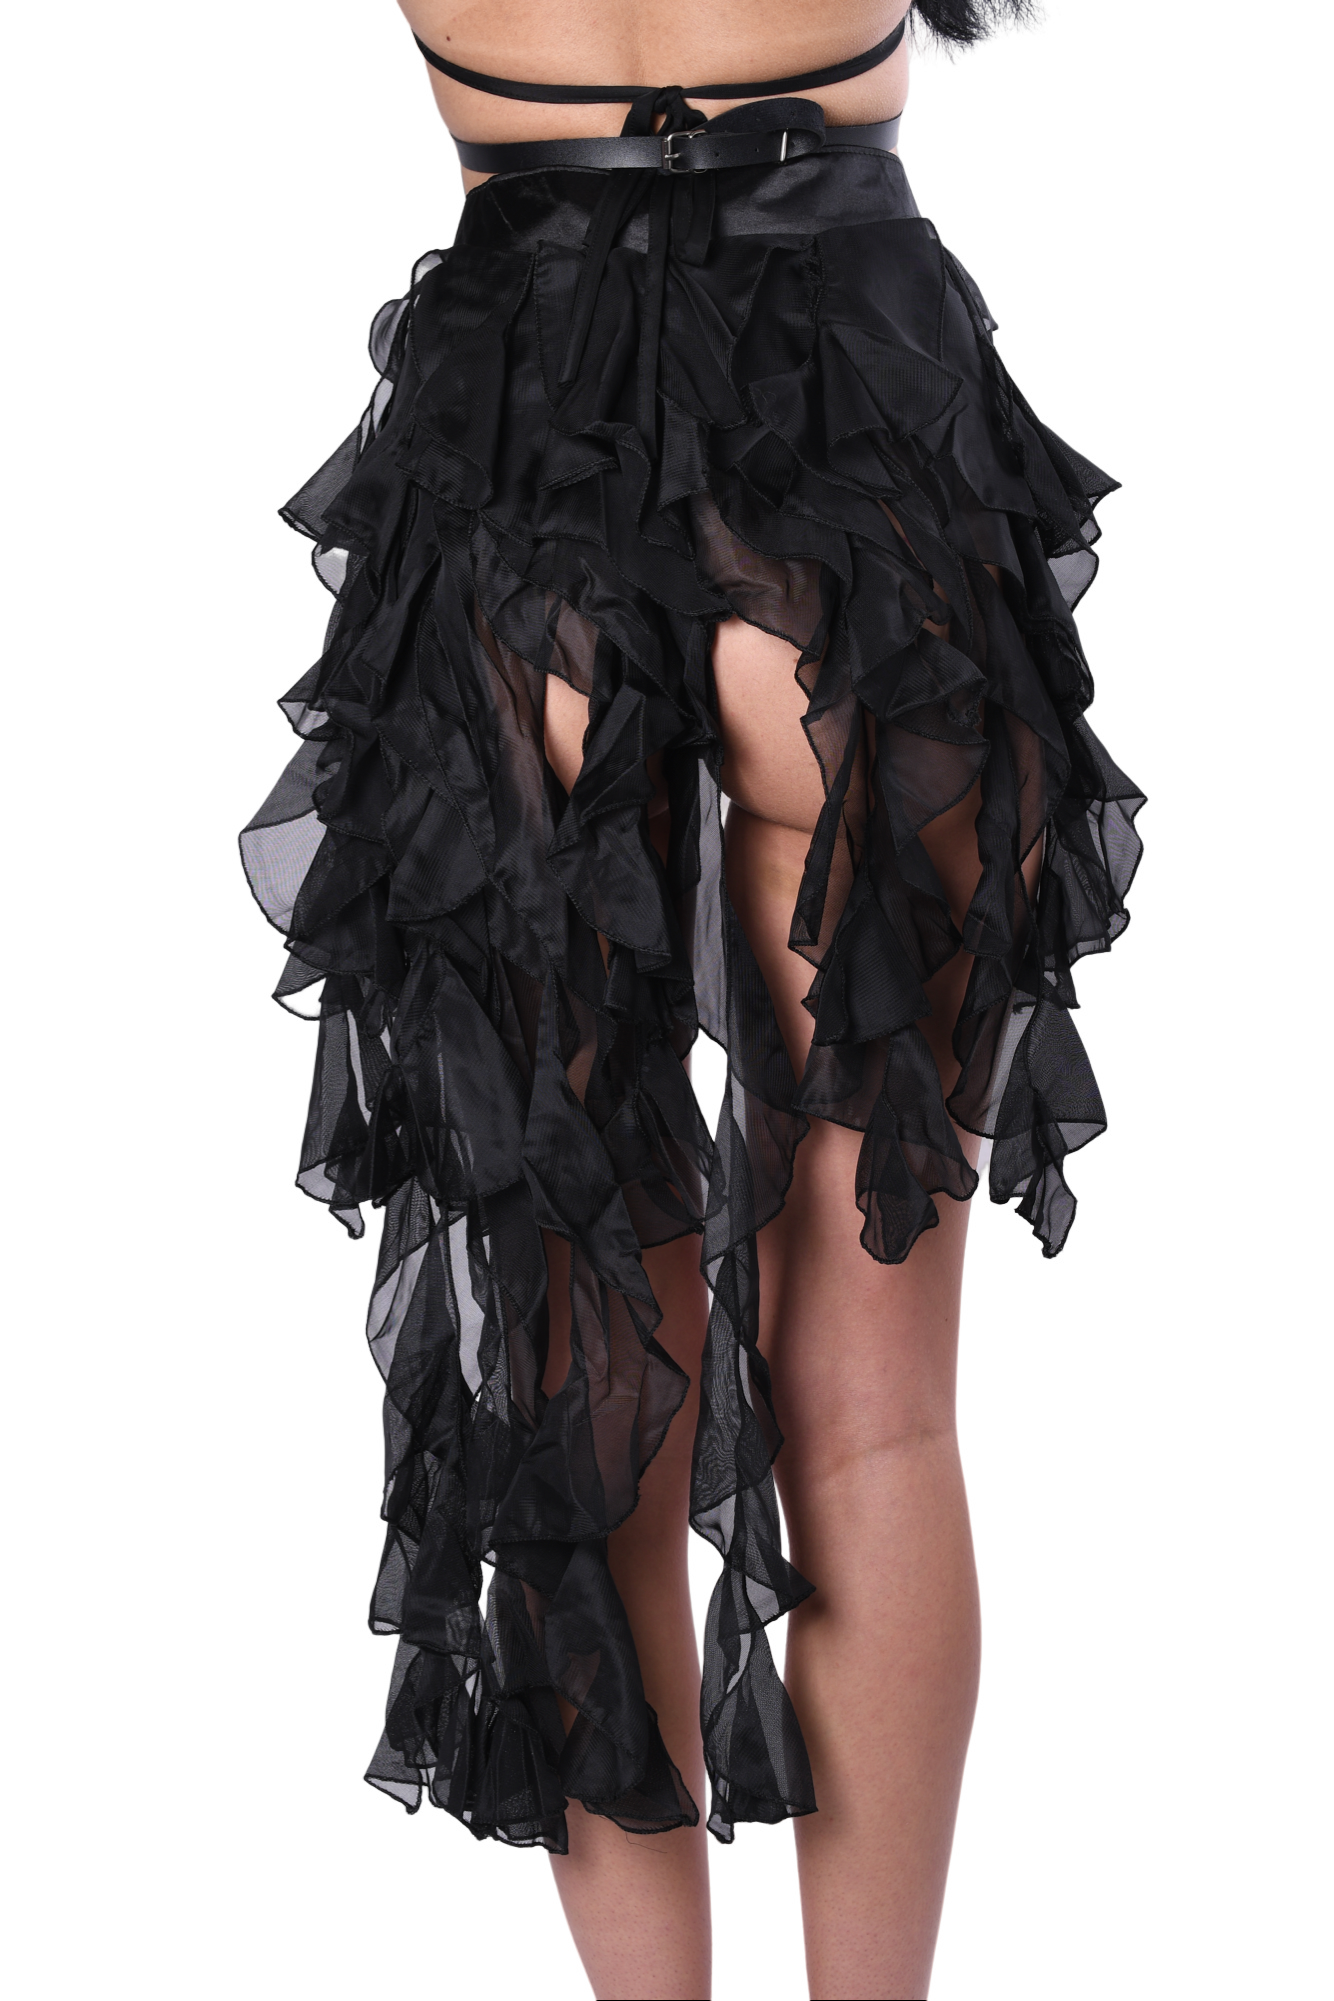 Night Owl Black Long Skirt